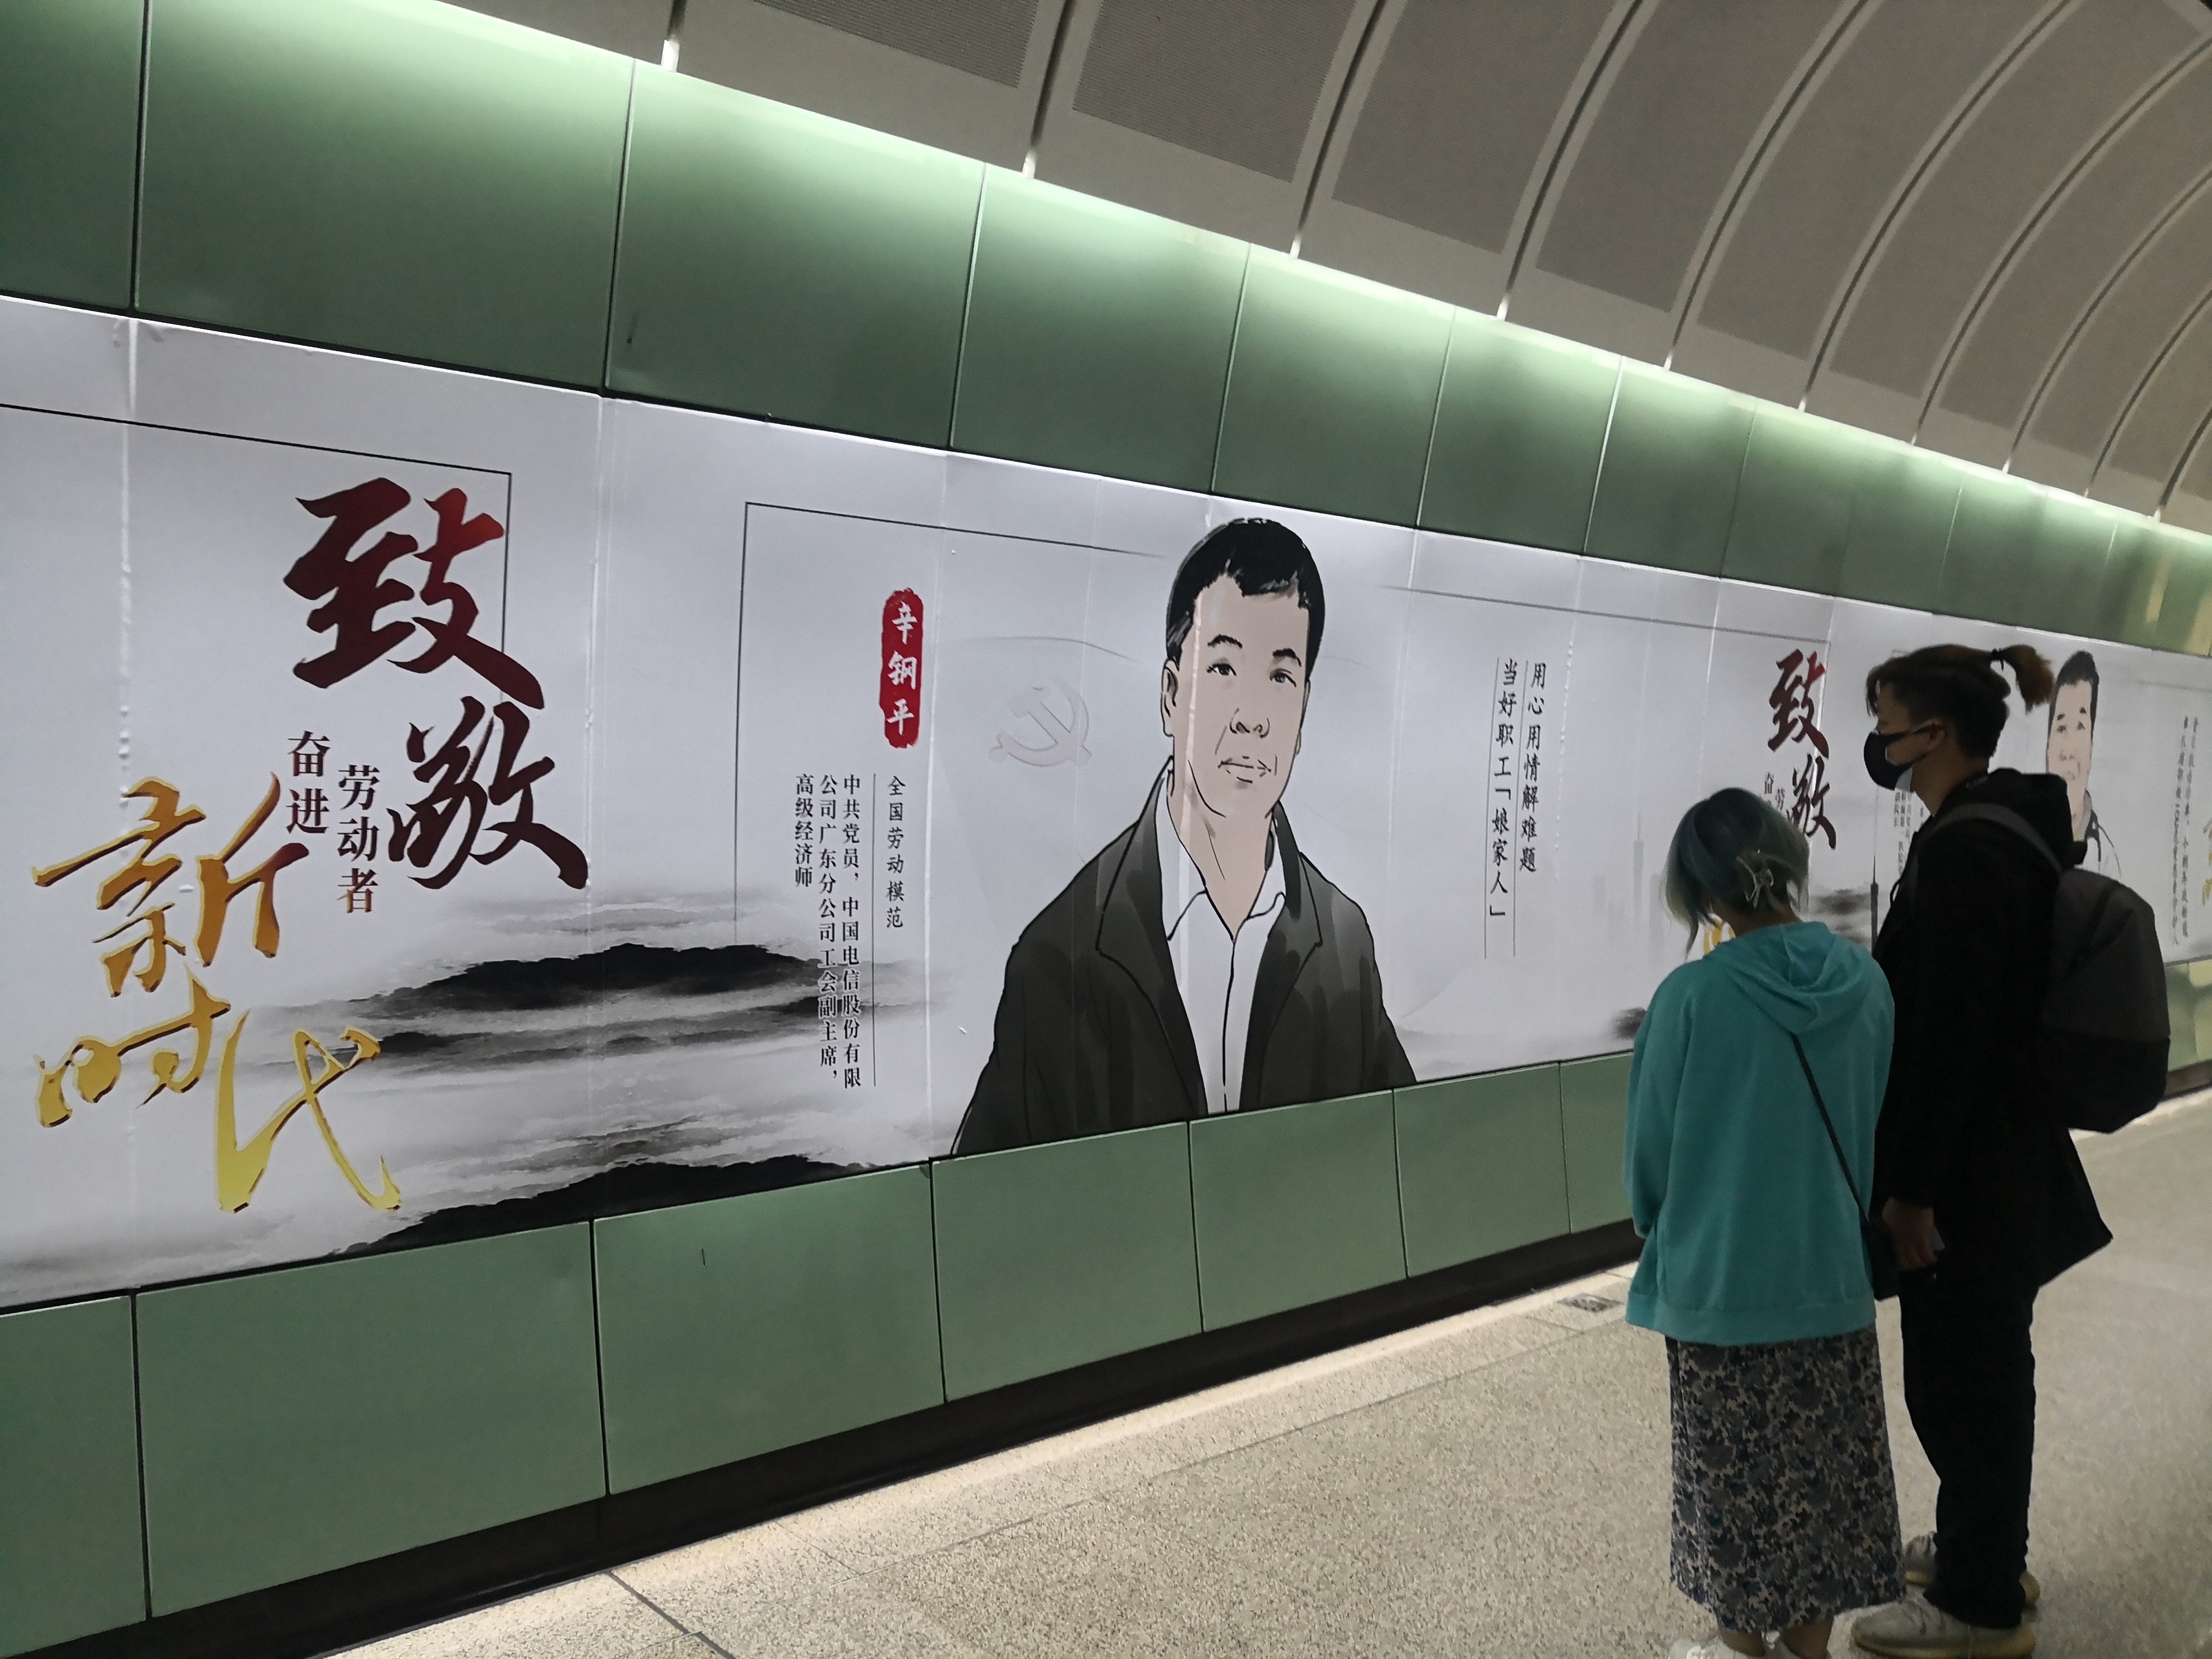 百米手绘劳模长卷亮相广州地铁站